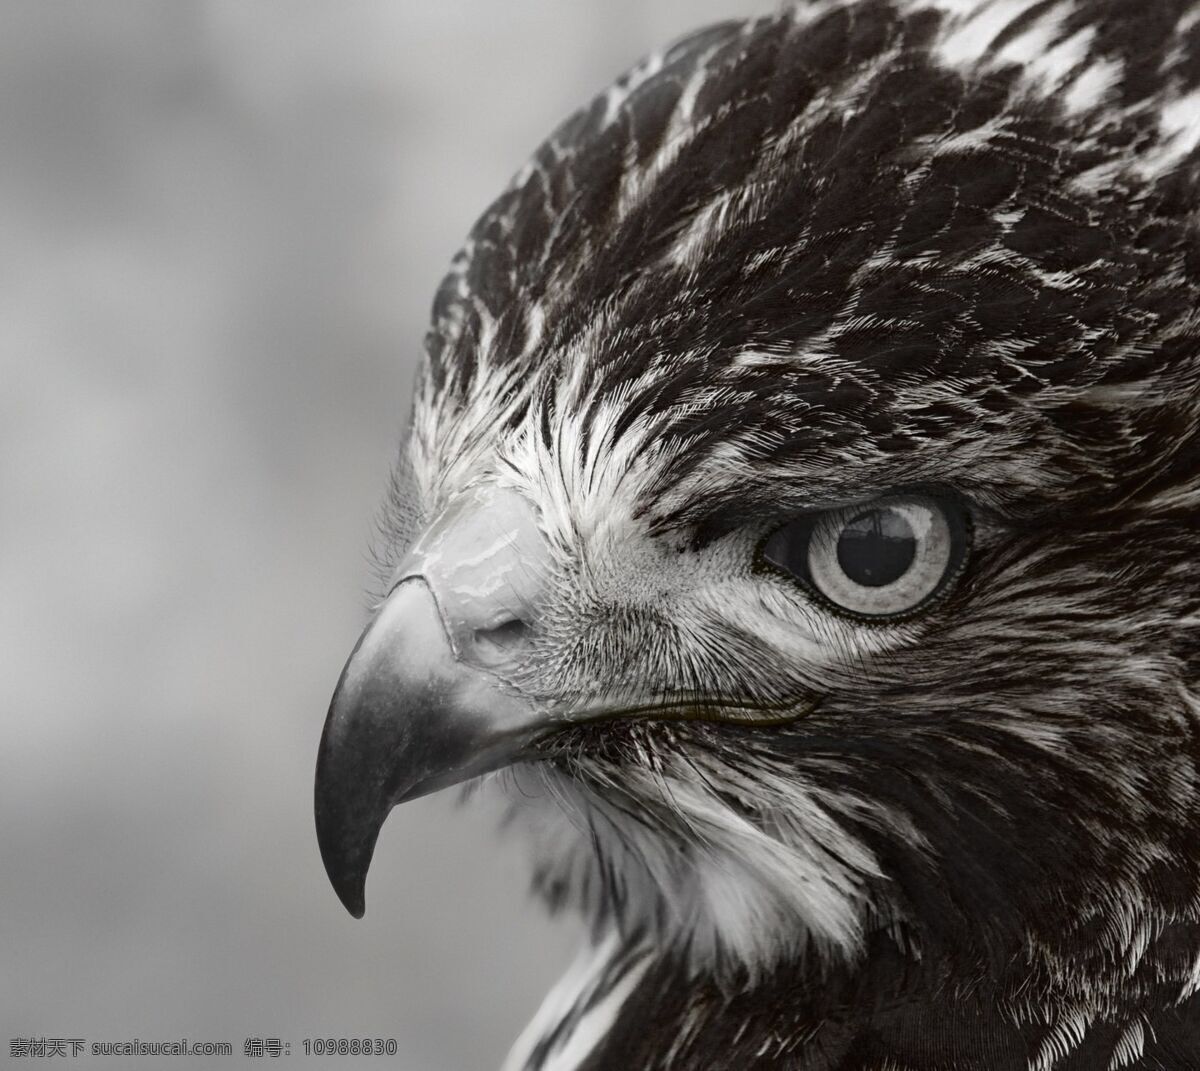 鹰 壁纸 动物 特写 喙 尖锐 羽毛 黑白 眼瞳 共享 图 天地 灵宠 生物世界 鸟类